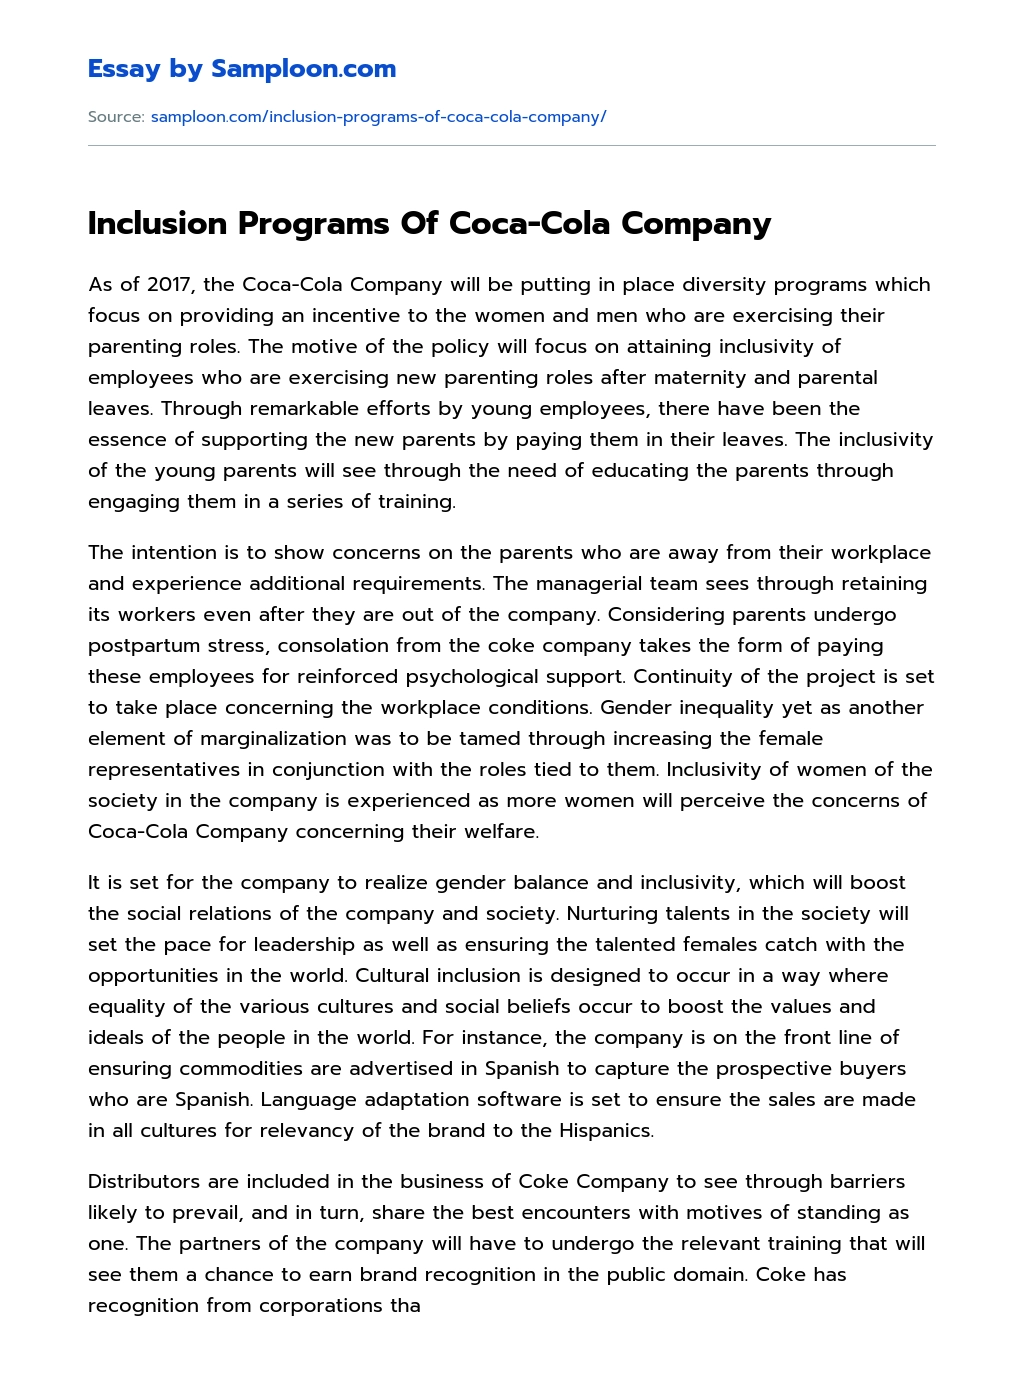 Inclusion Programs Of Coca-Cola Company essay